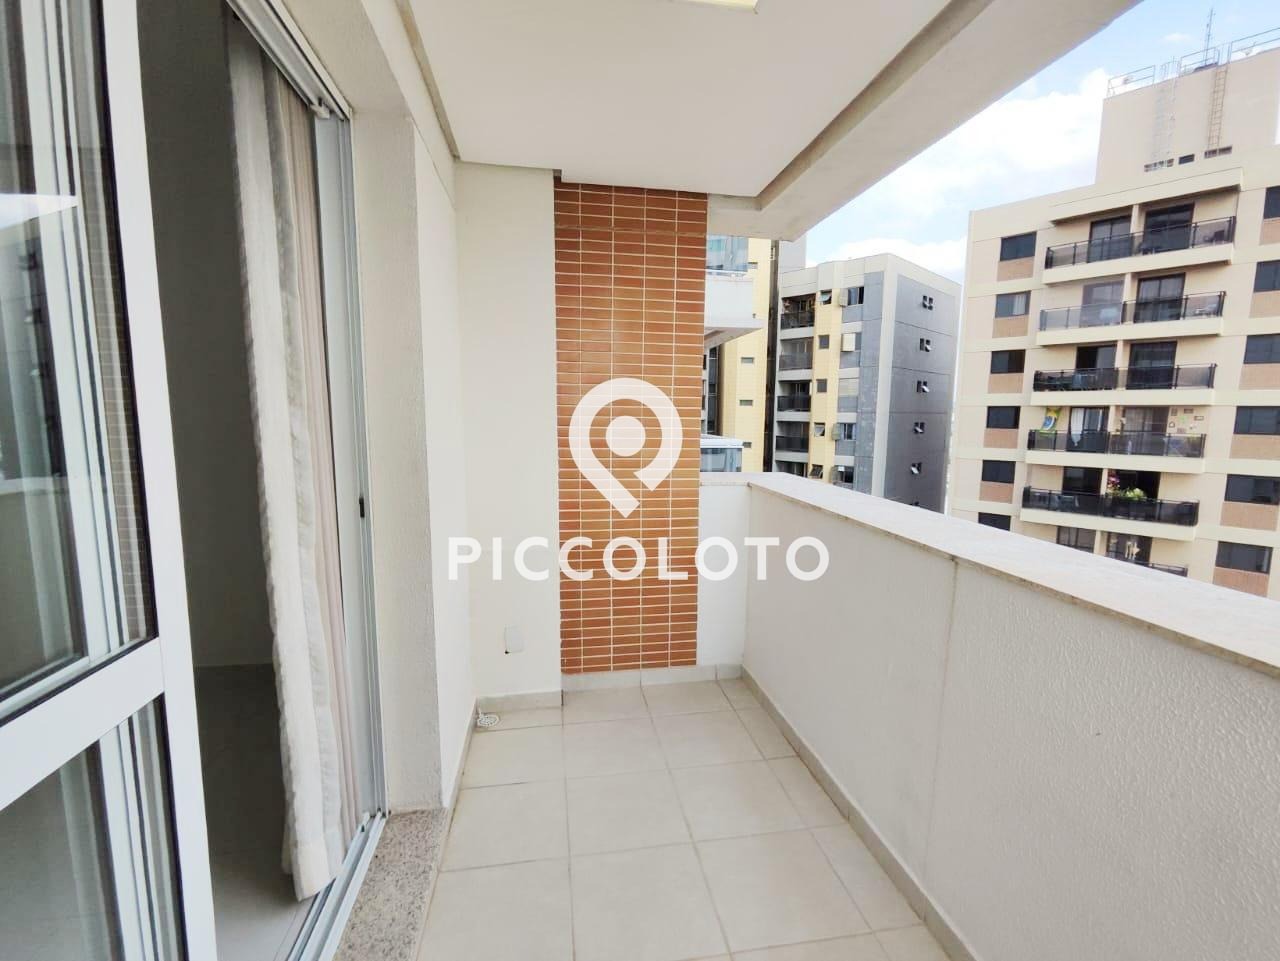 Piccoloto -Apartamento à venda no Botafogo em Campinas